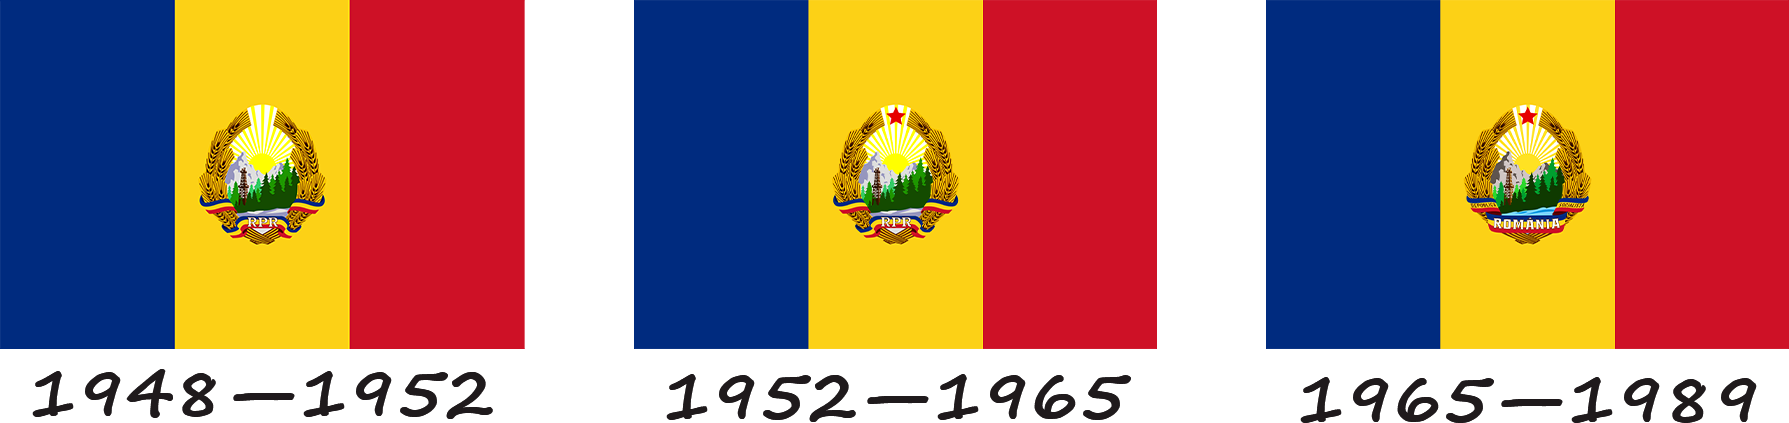 Історія прапора Румунії